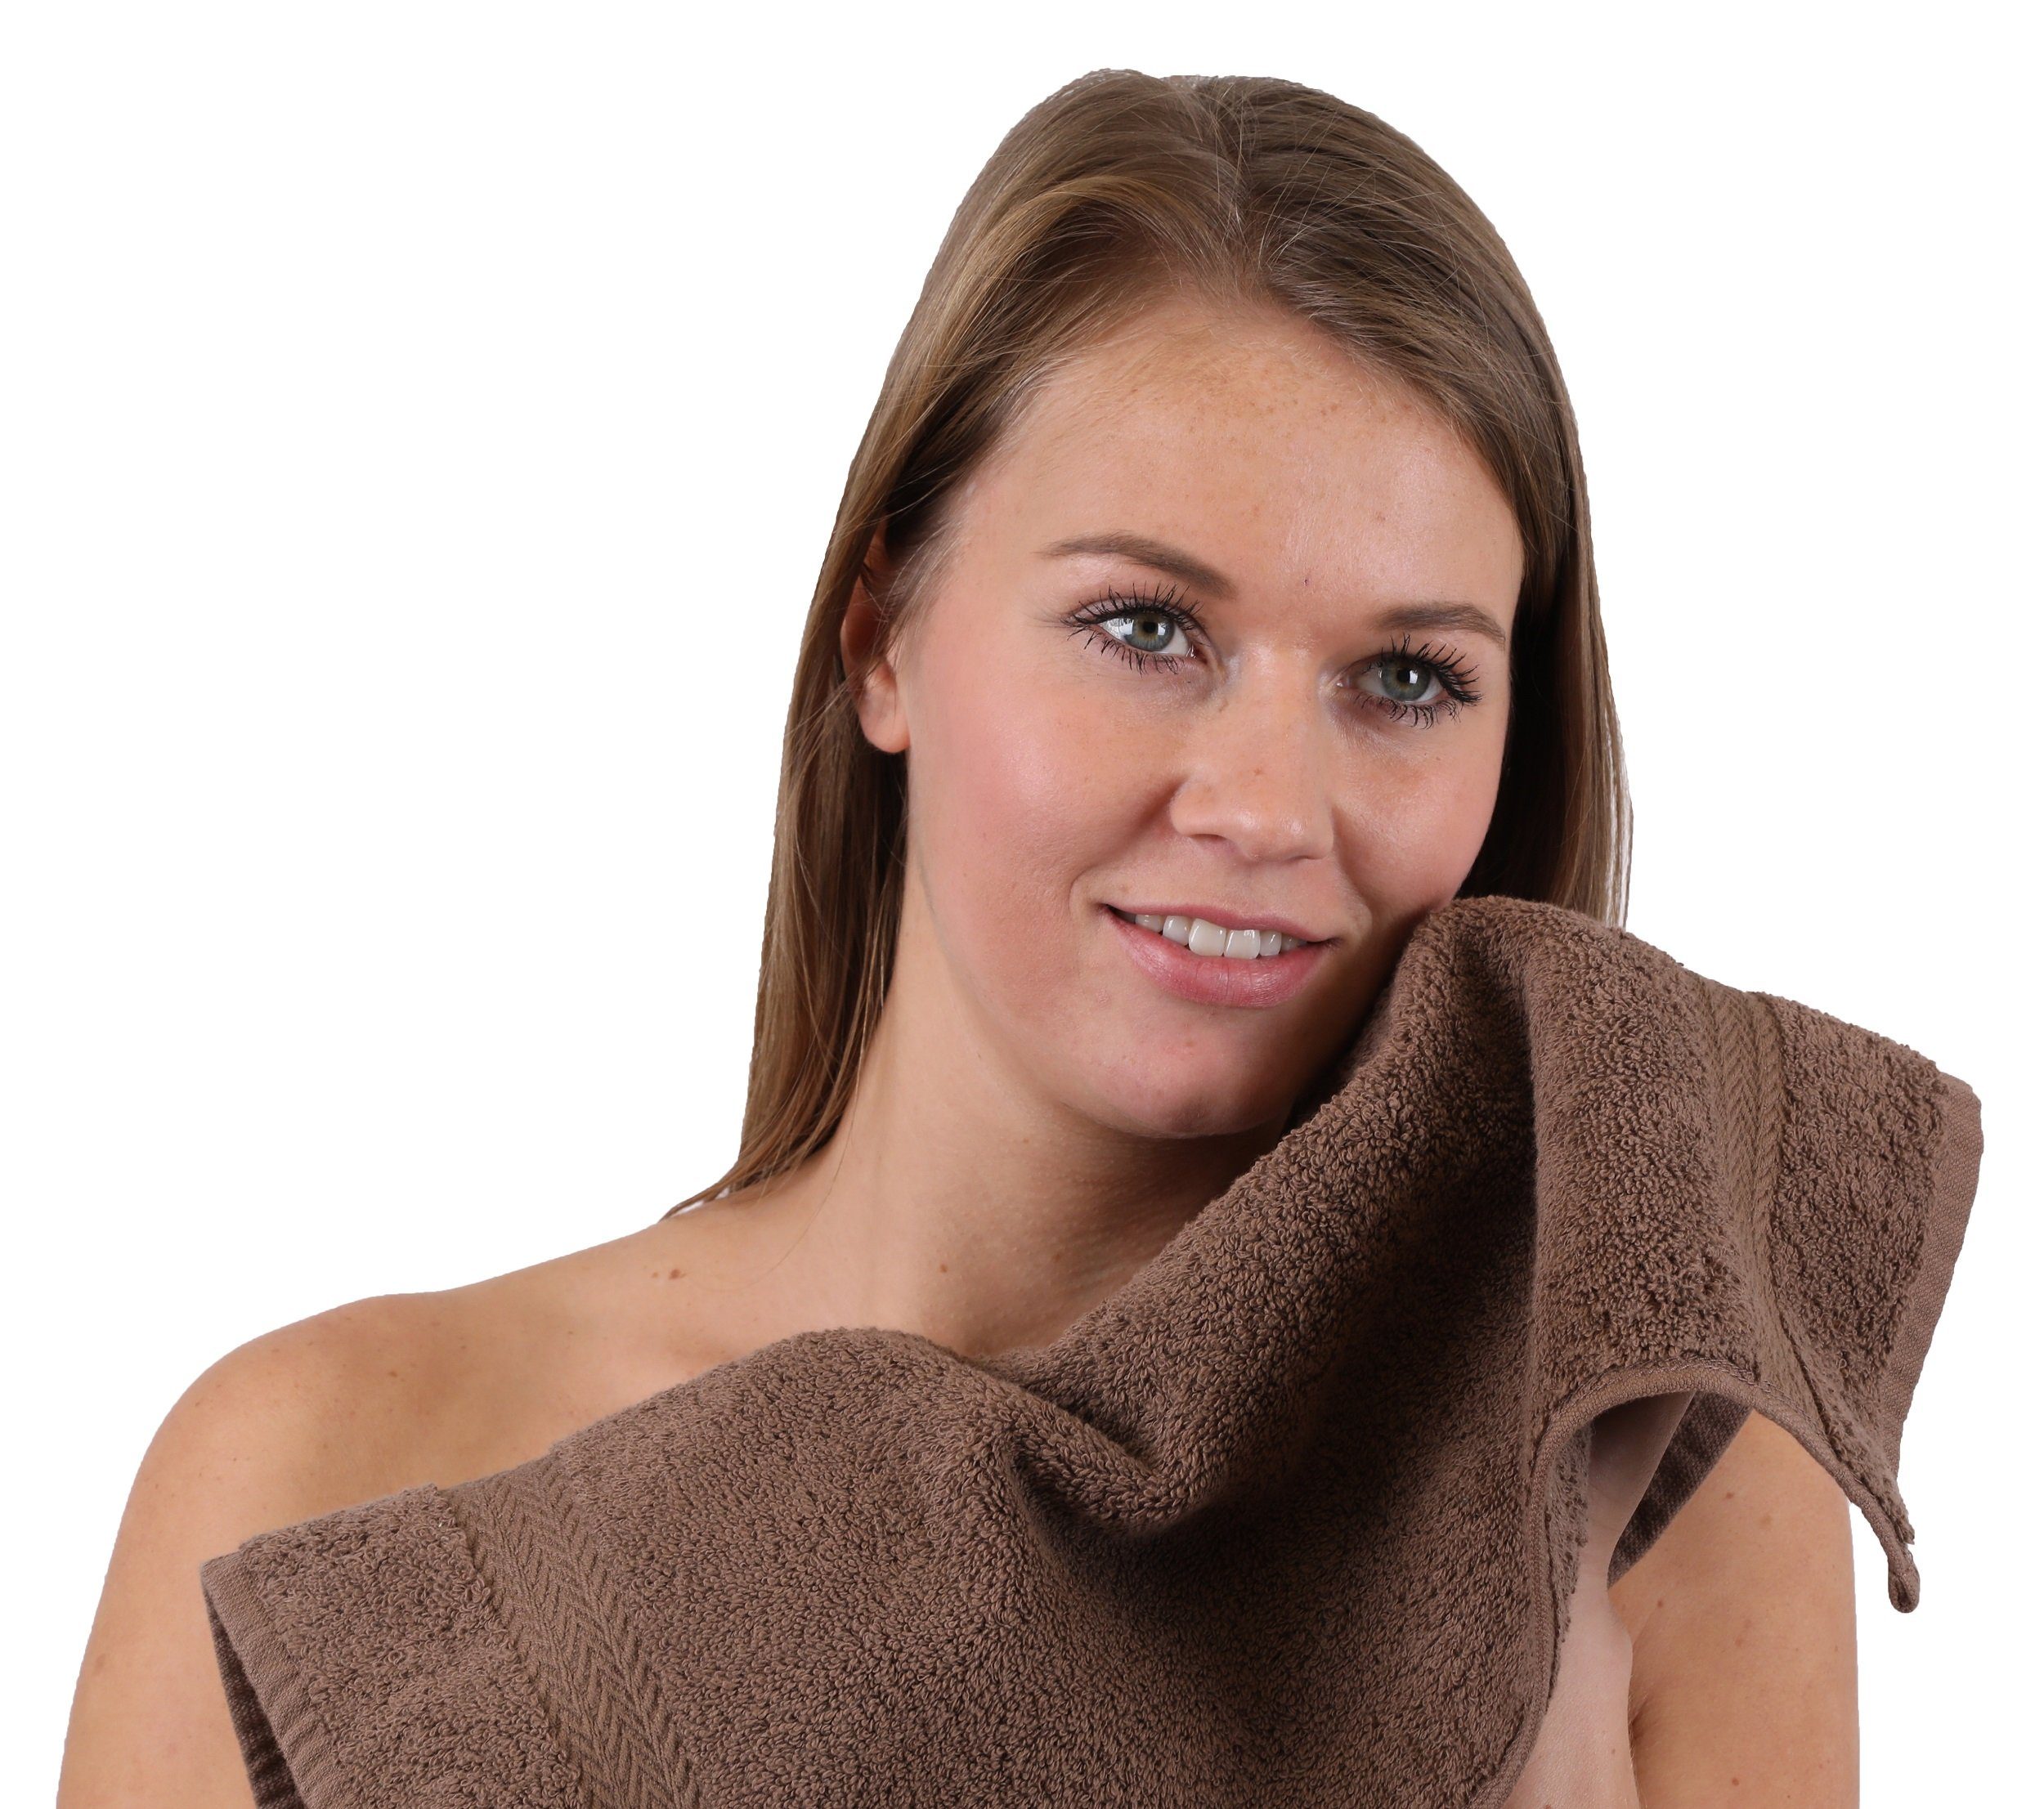 Betz Handtuch Set 10-TLG. Handtuch-Set Farbe und altrosa Baumwolle nussbraun, 100% Classic